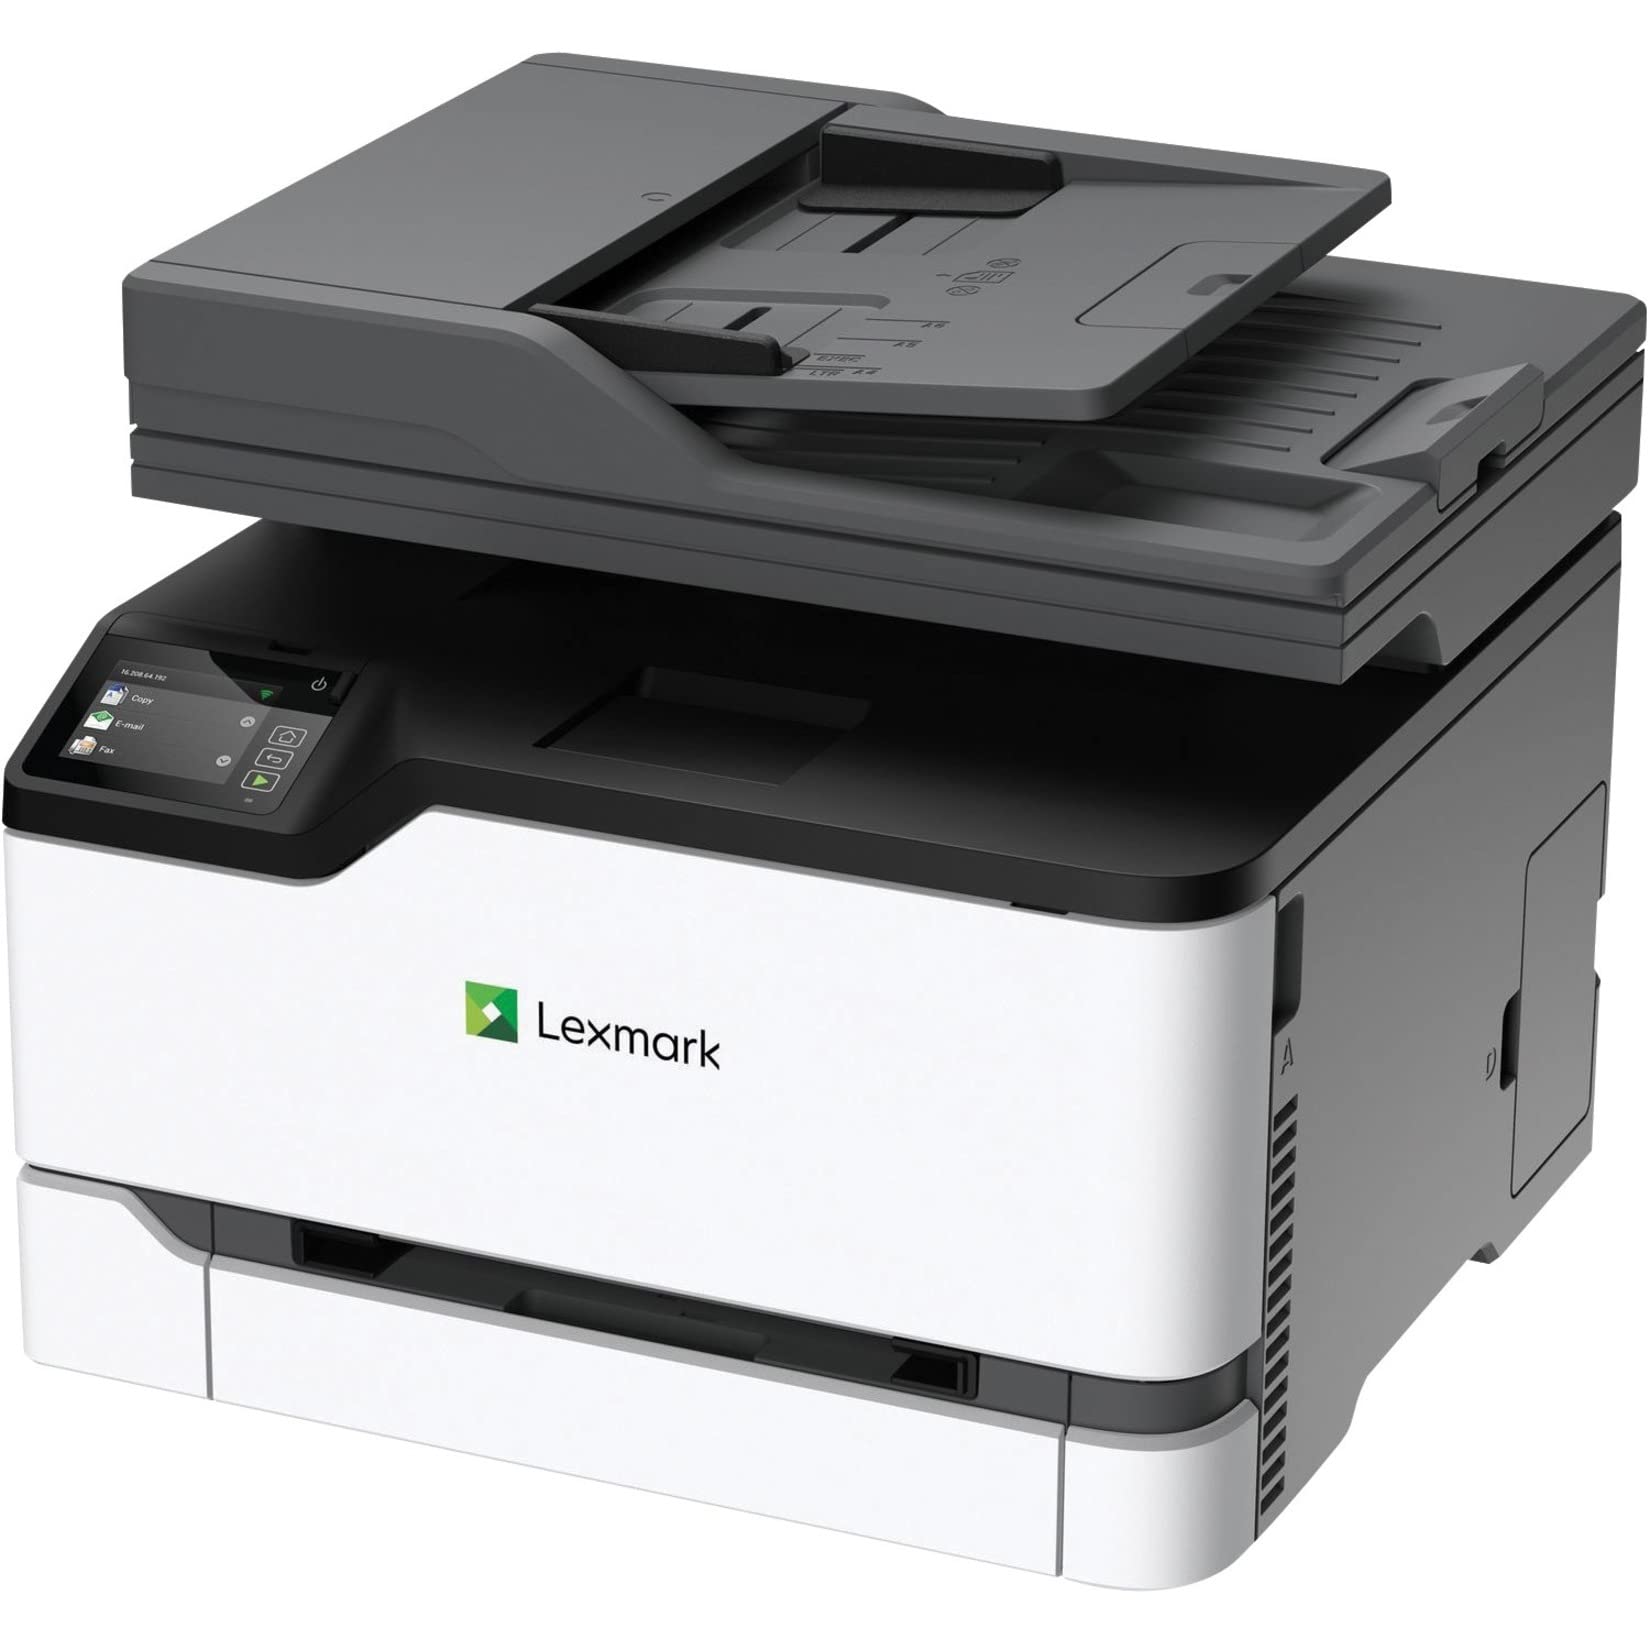 Lexmark MC3426i 彩色激光多功能无线打印机，具有打印、复印、扫描和云传真功能，以及全谱安全性和高达 26ppm 的打印速度 (40N9650)，白色，小型